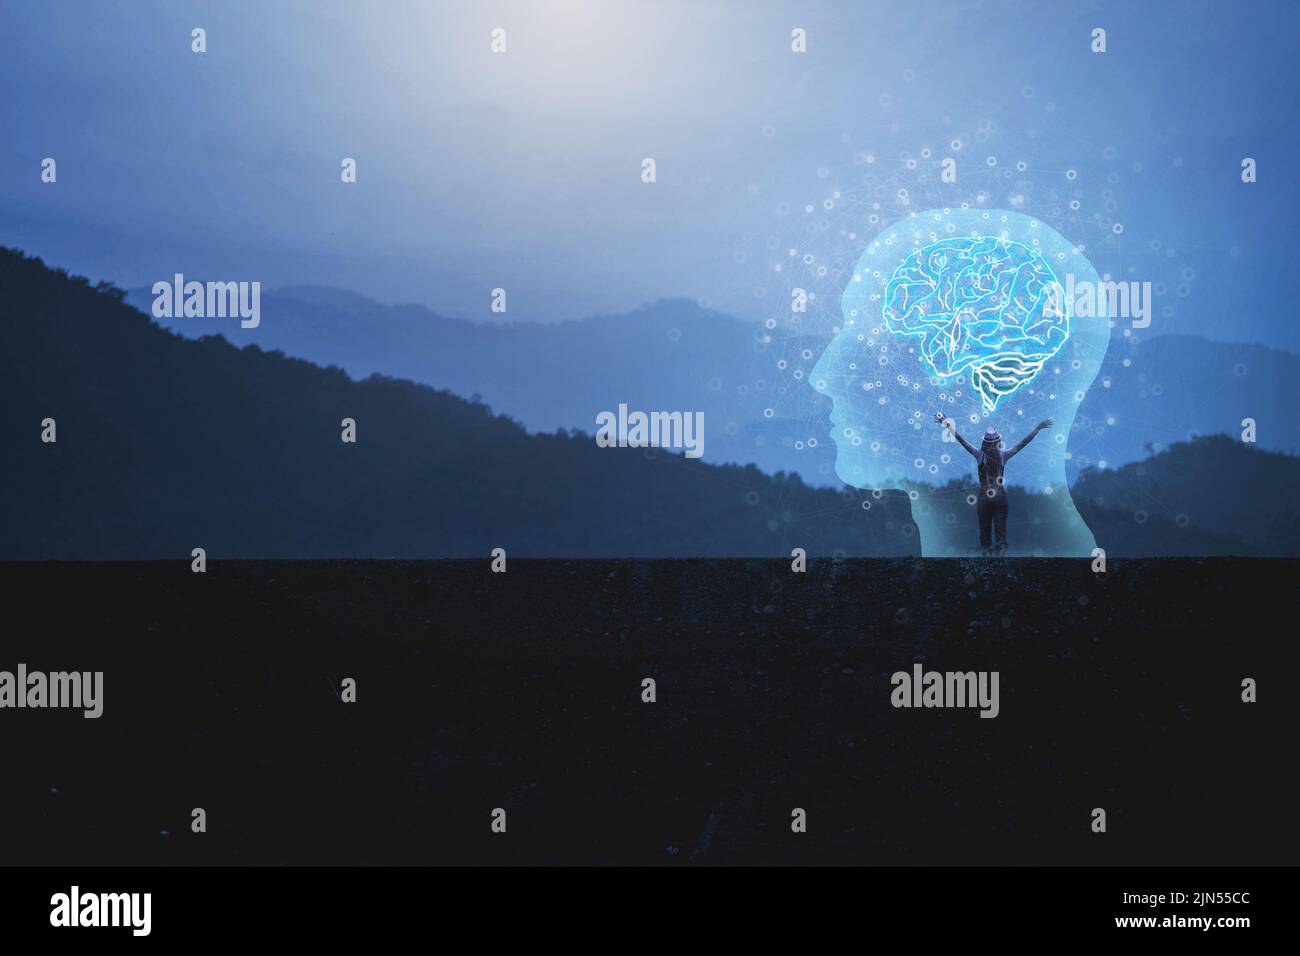 Virtuelle Frau mit symbolischen Neuronen in ihrem Gehirn. Freiheit des Denkens Kreativität und Innovation / Abendhimmel Hintergrund Stockfoto